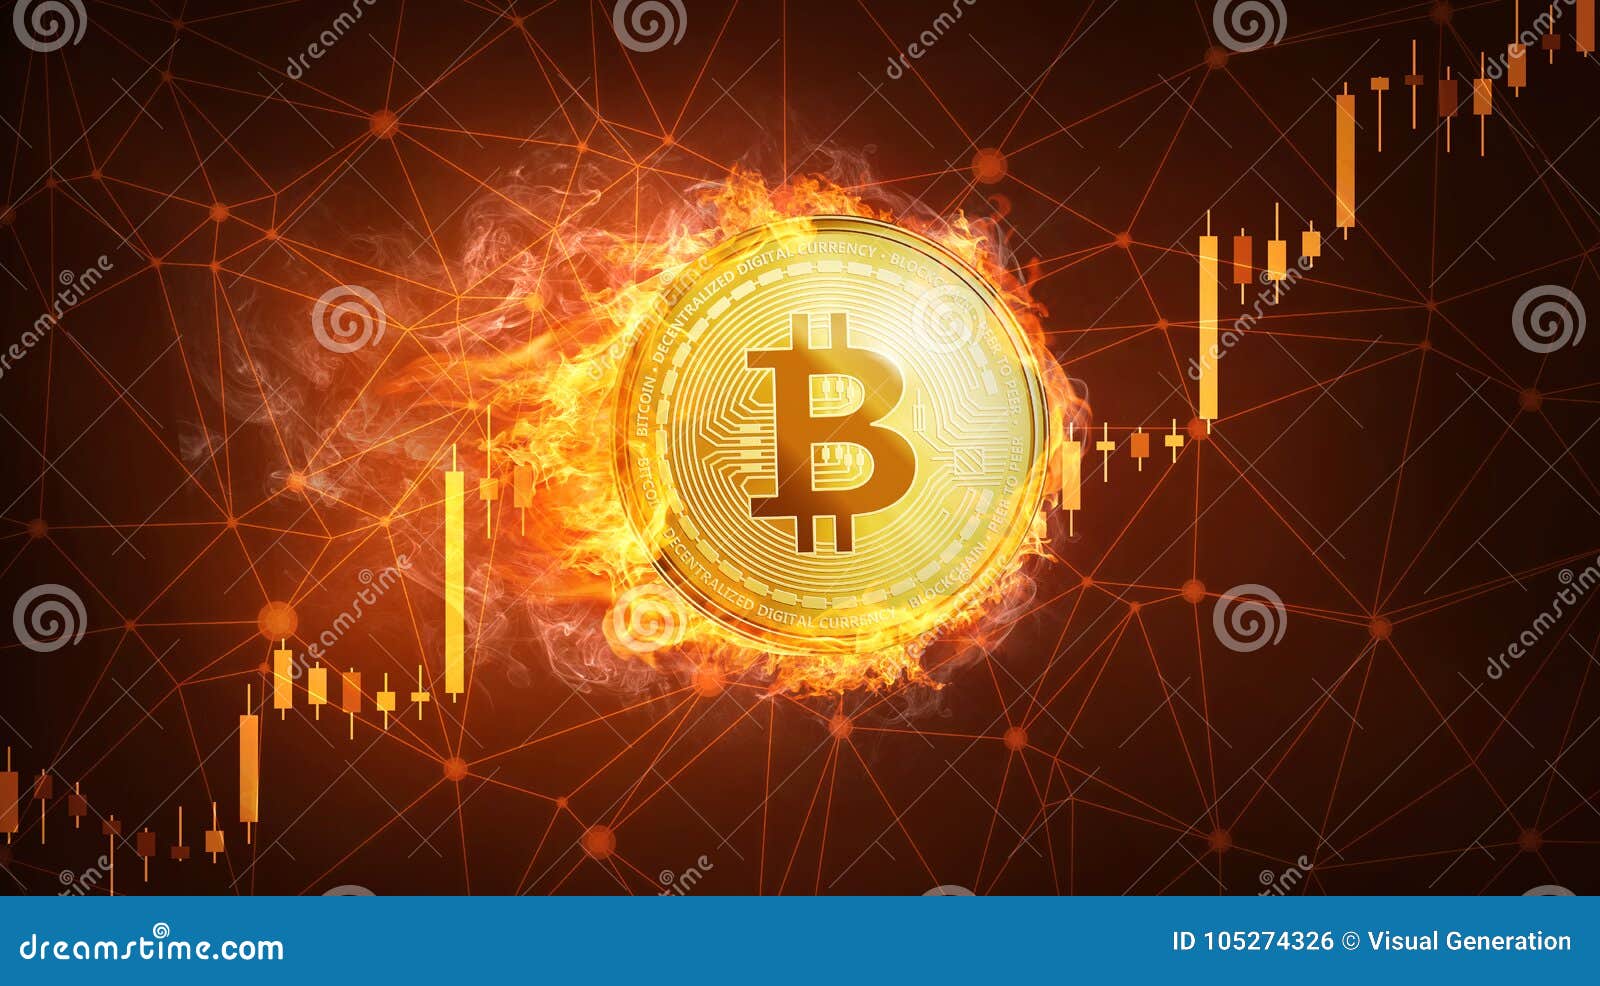 Bitcoin: grafico, andamento e quotazione in tempo reale